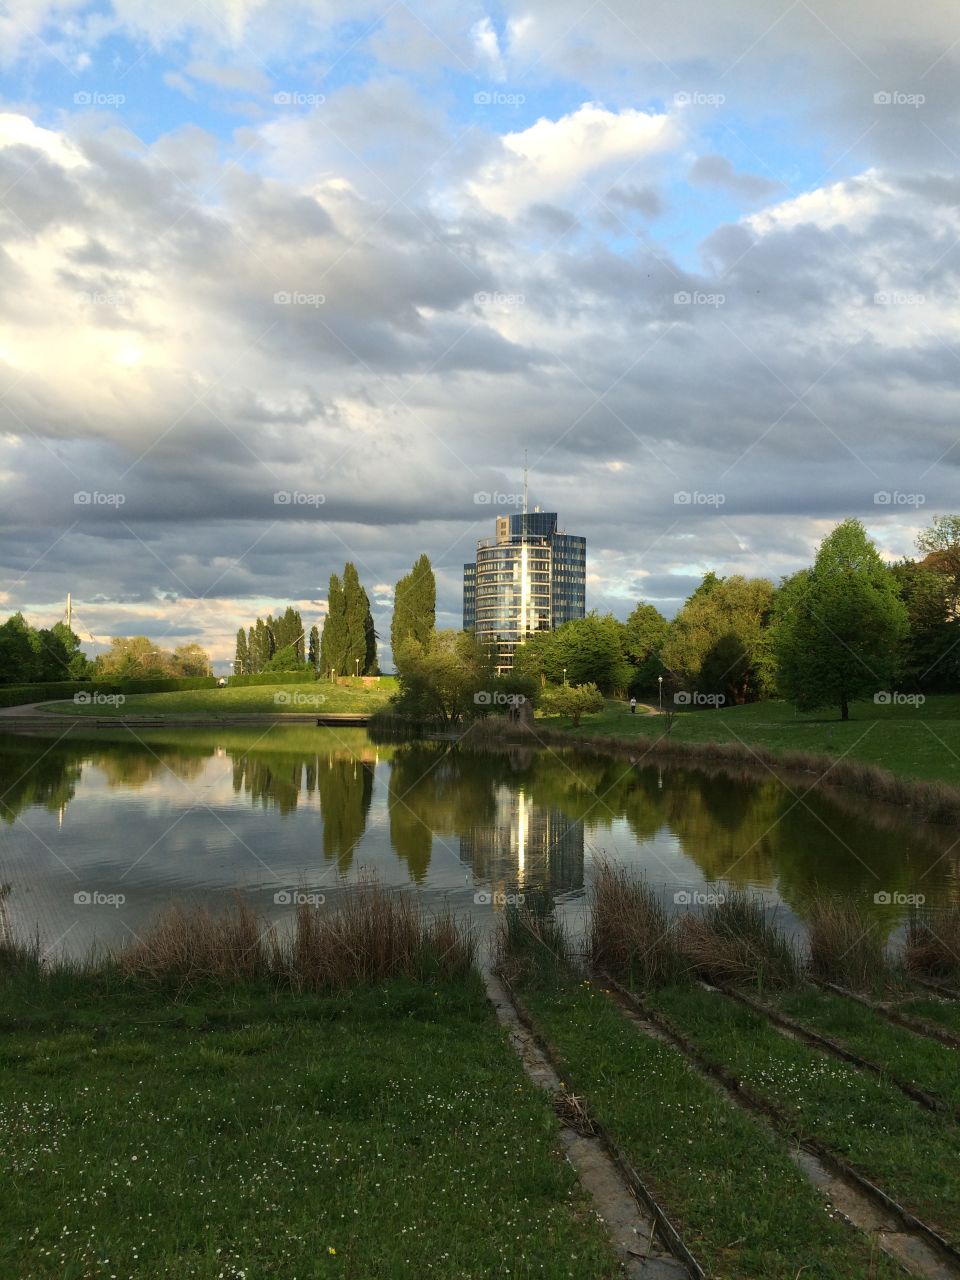 Landscape in park 